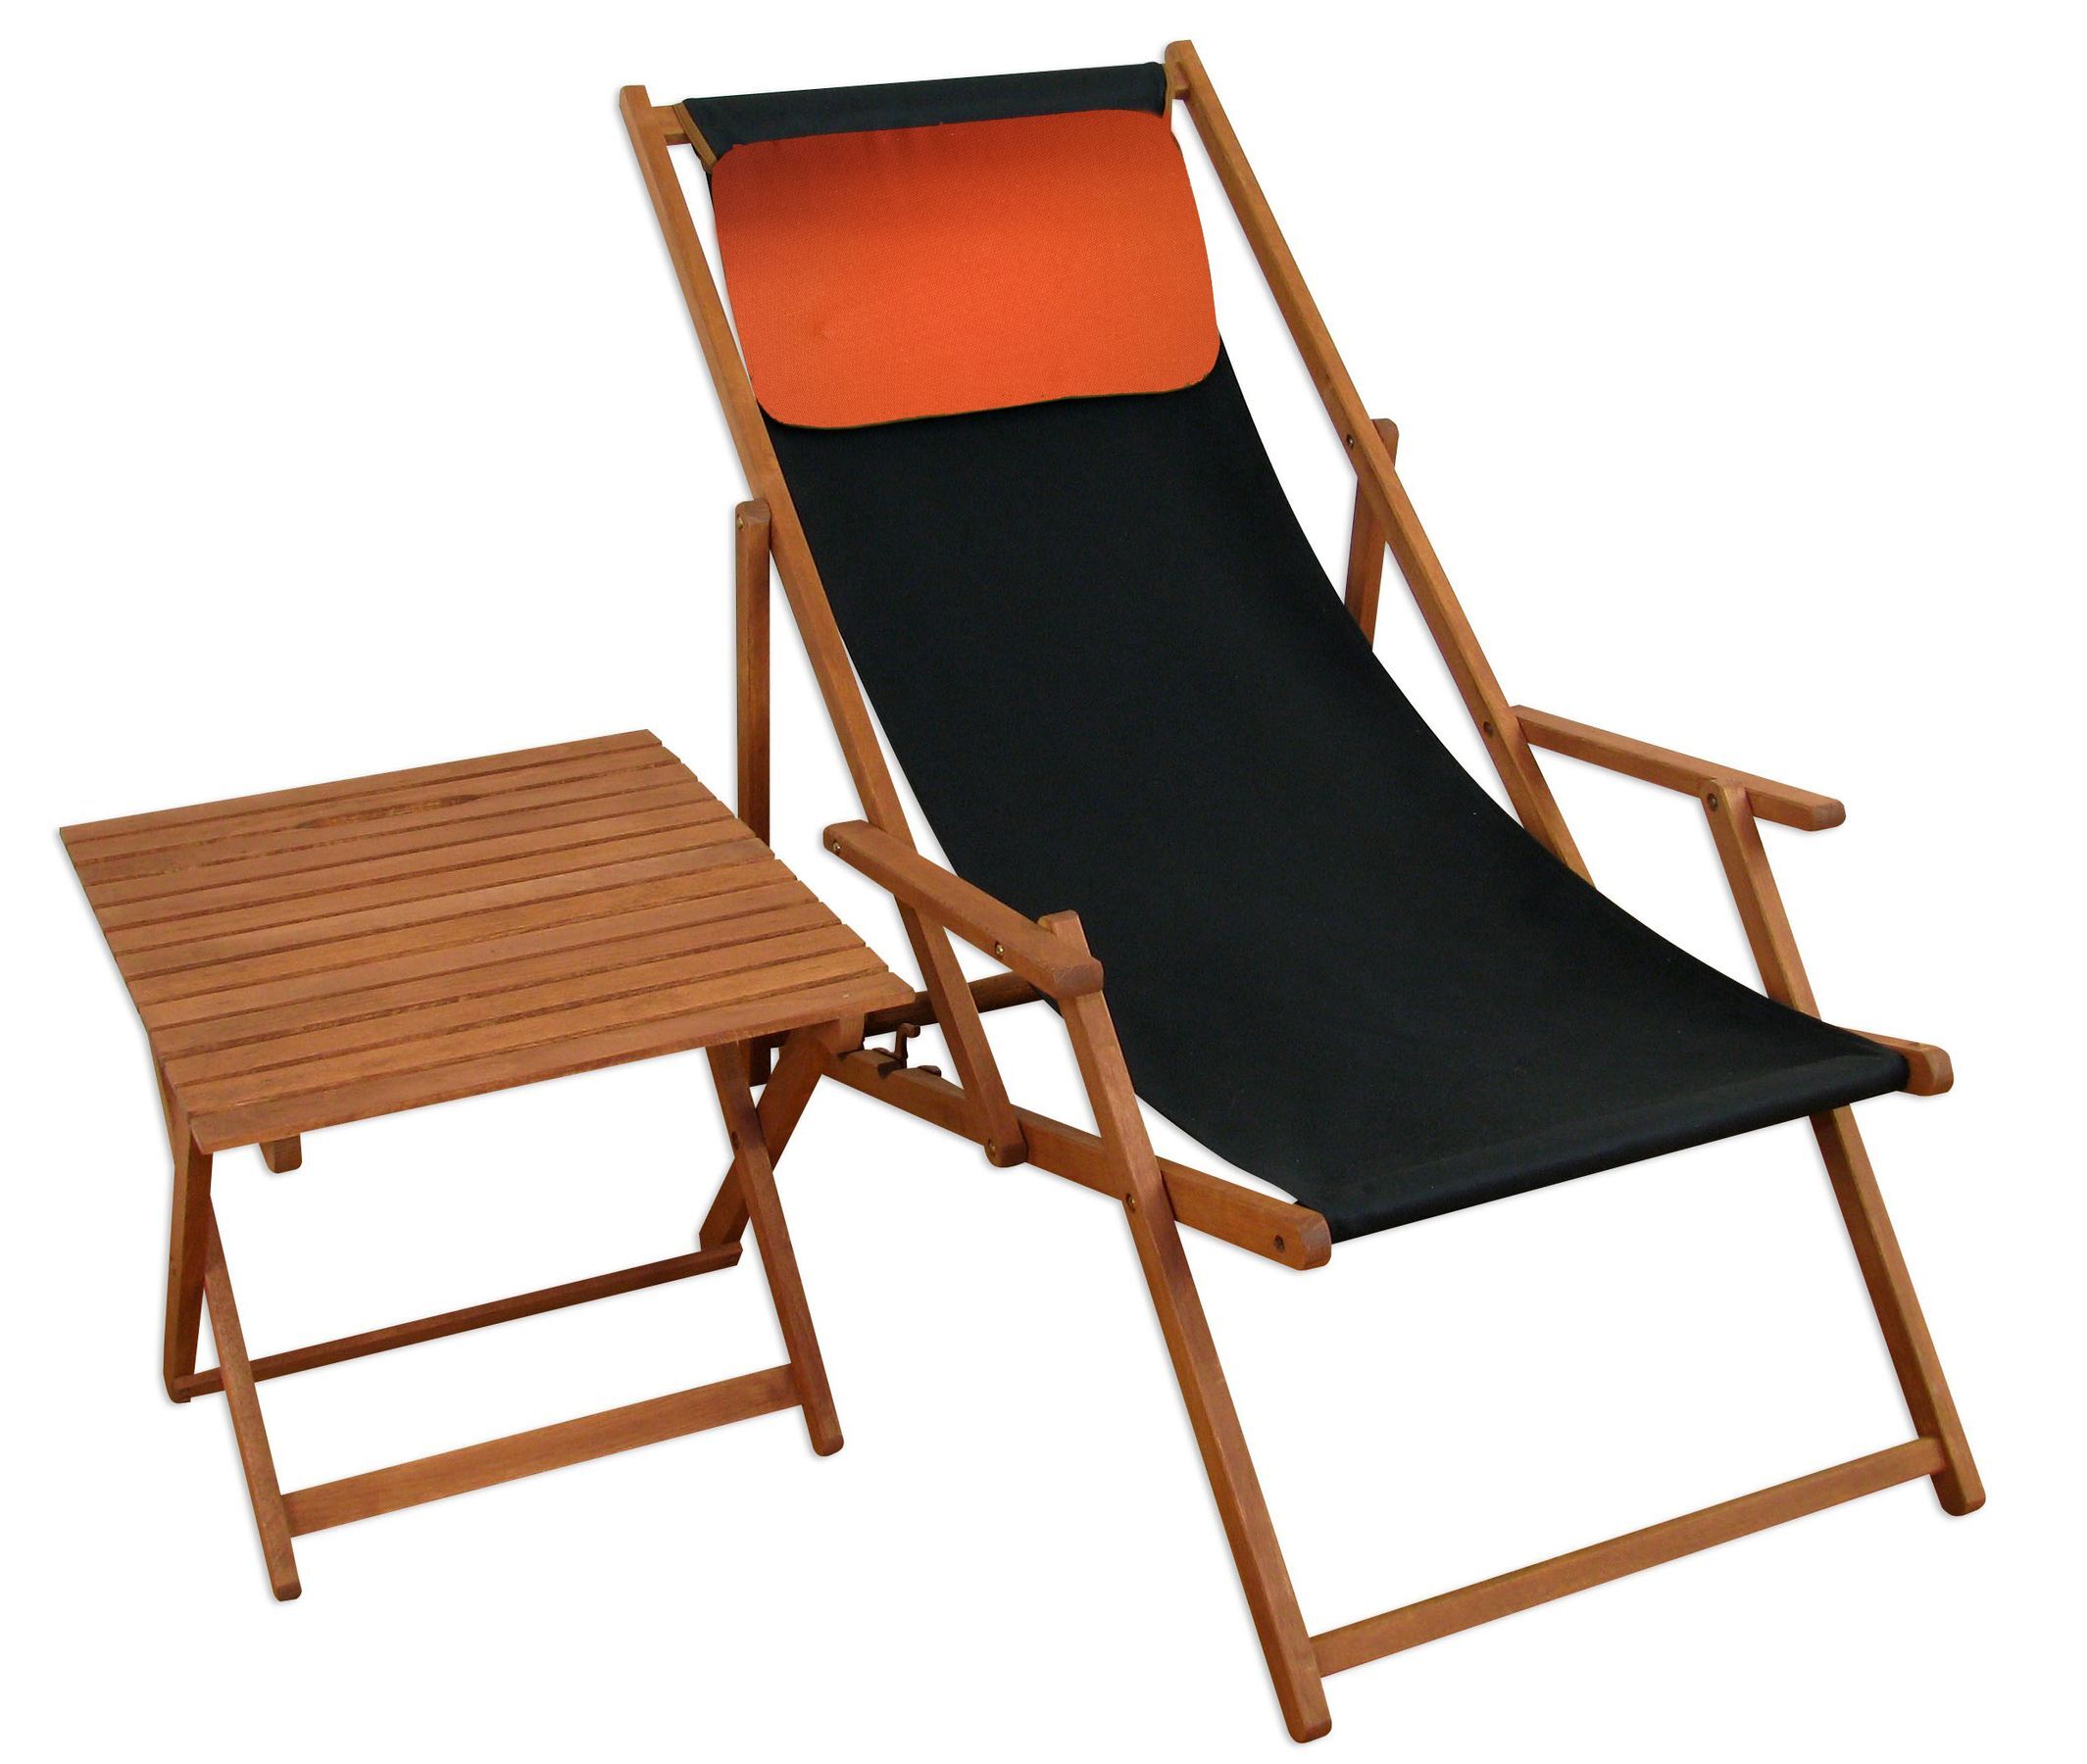 Kissen Farbe Terracotta als Zubehör für Gartenliege Strandstuhl Gartenmöbel 10-300-T